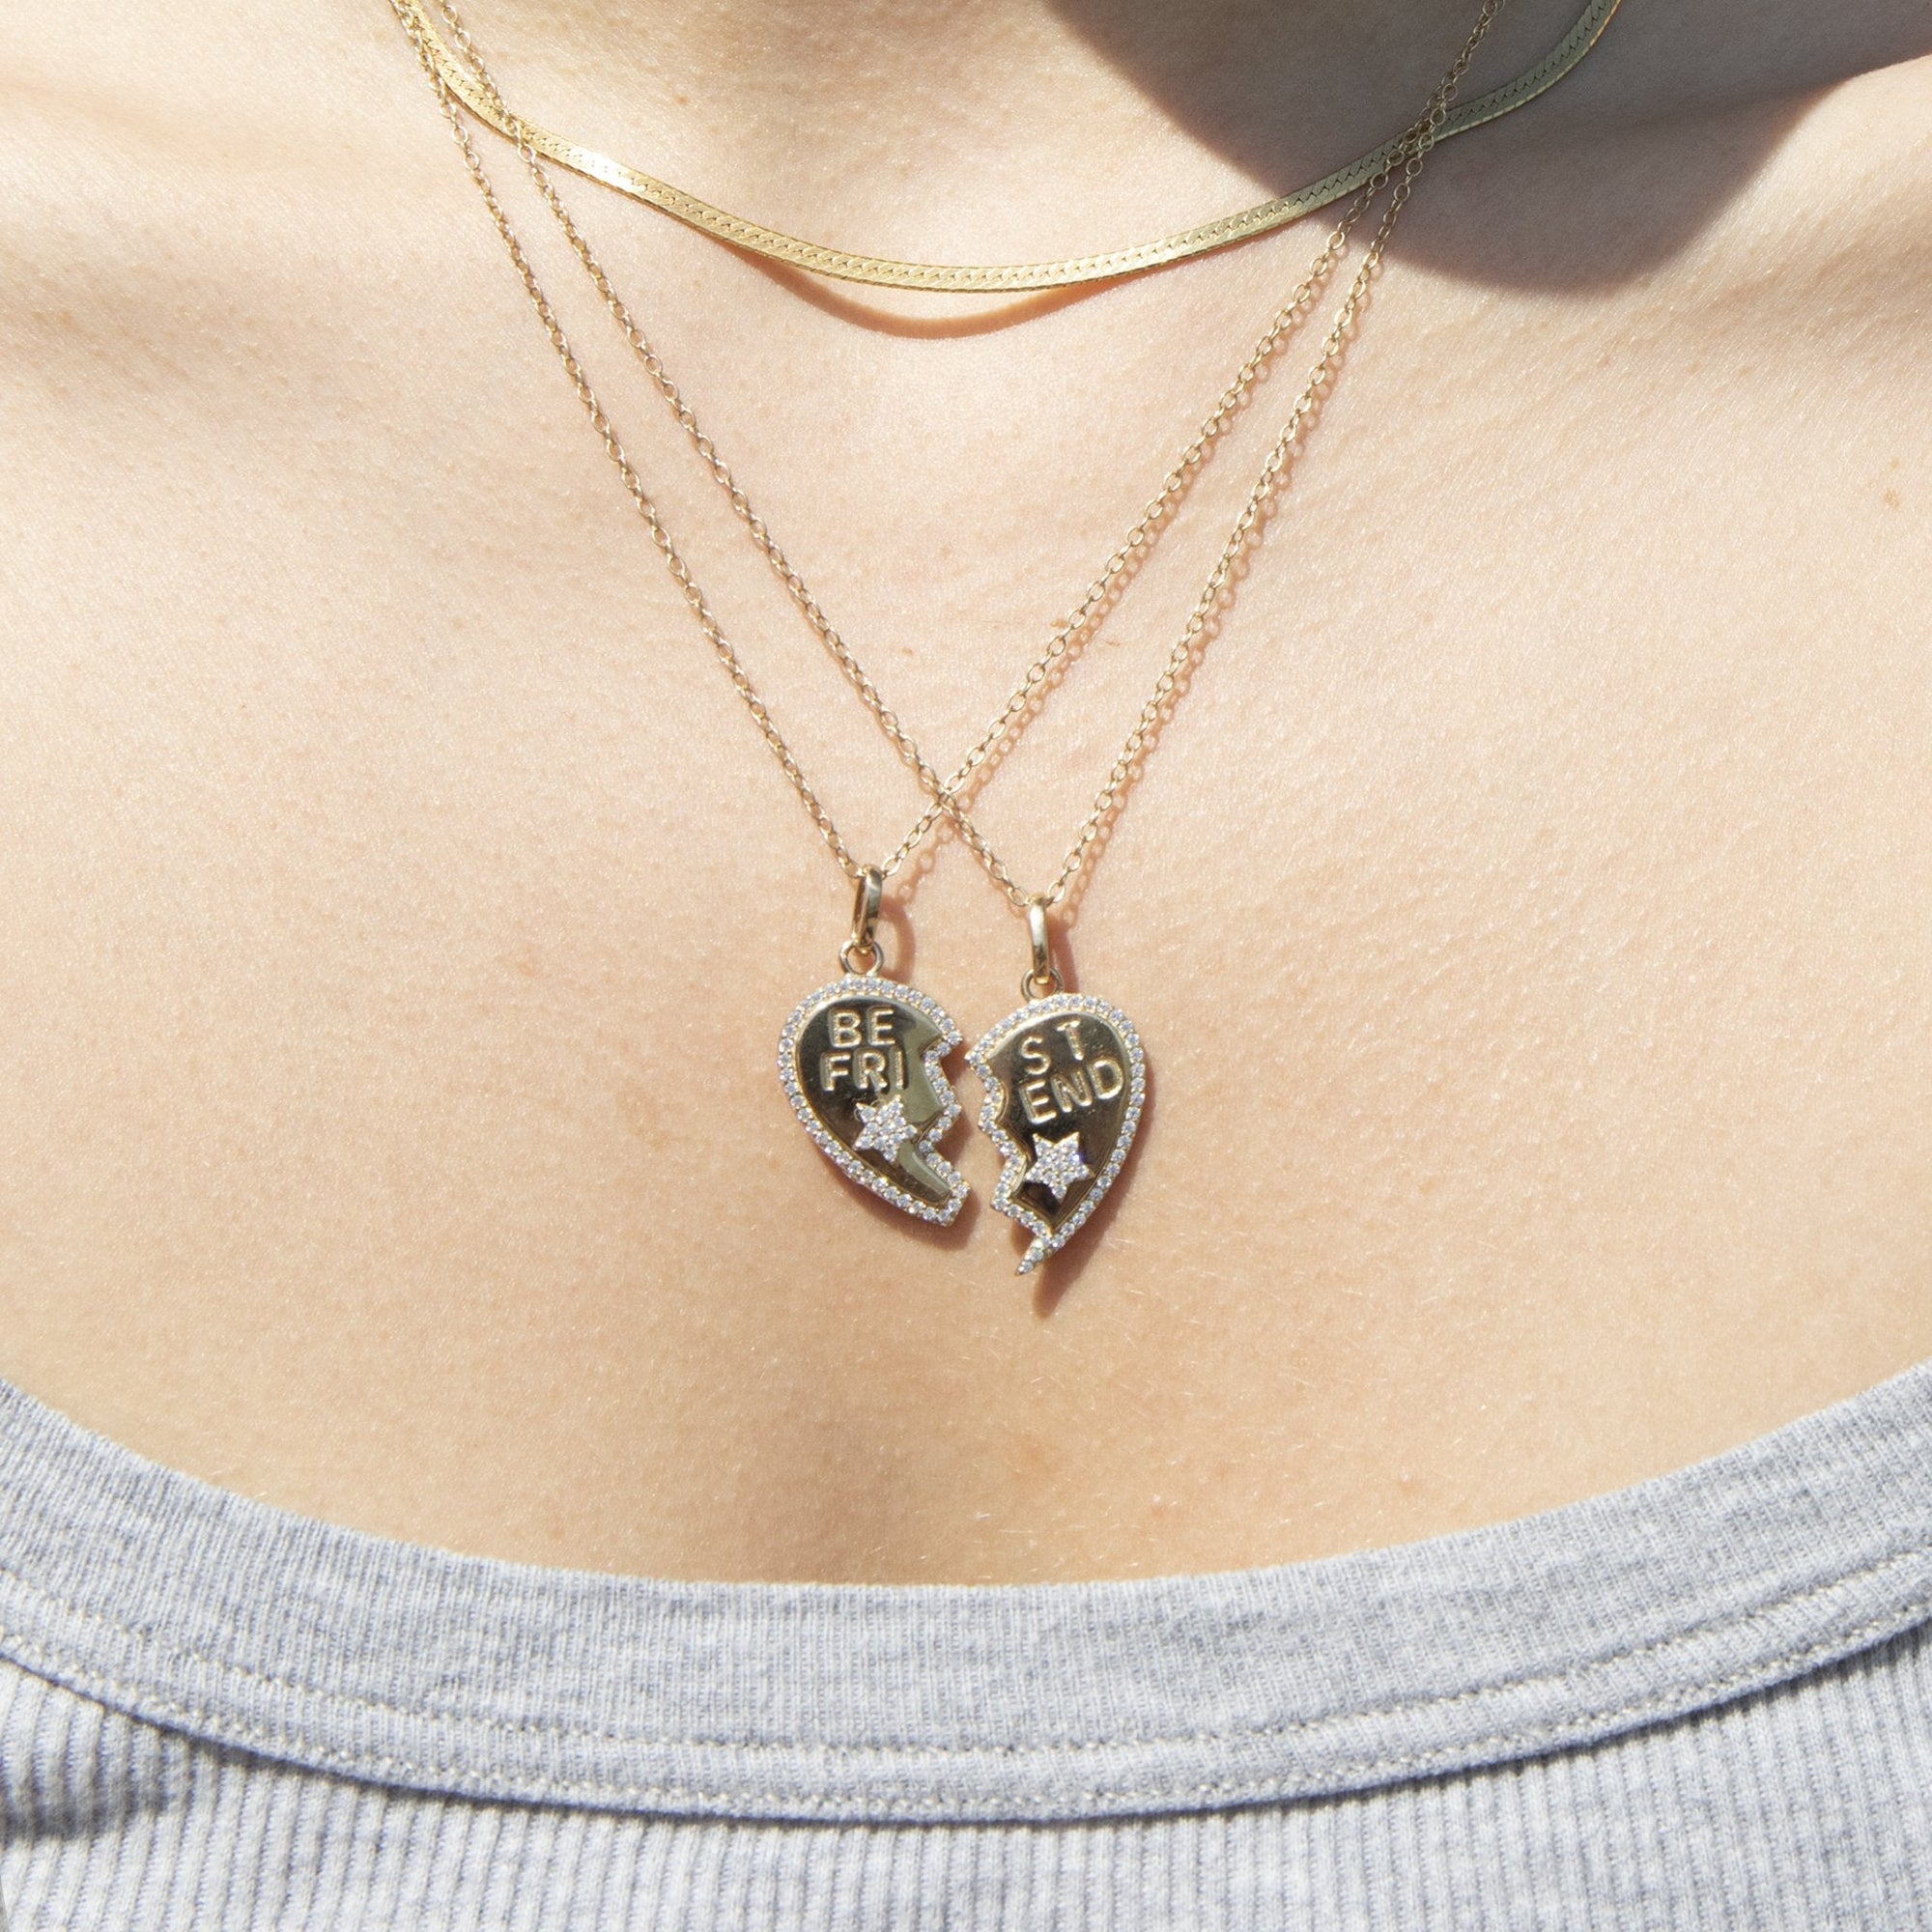 Best Friend split heart necklace - seol gold